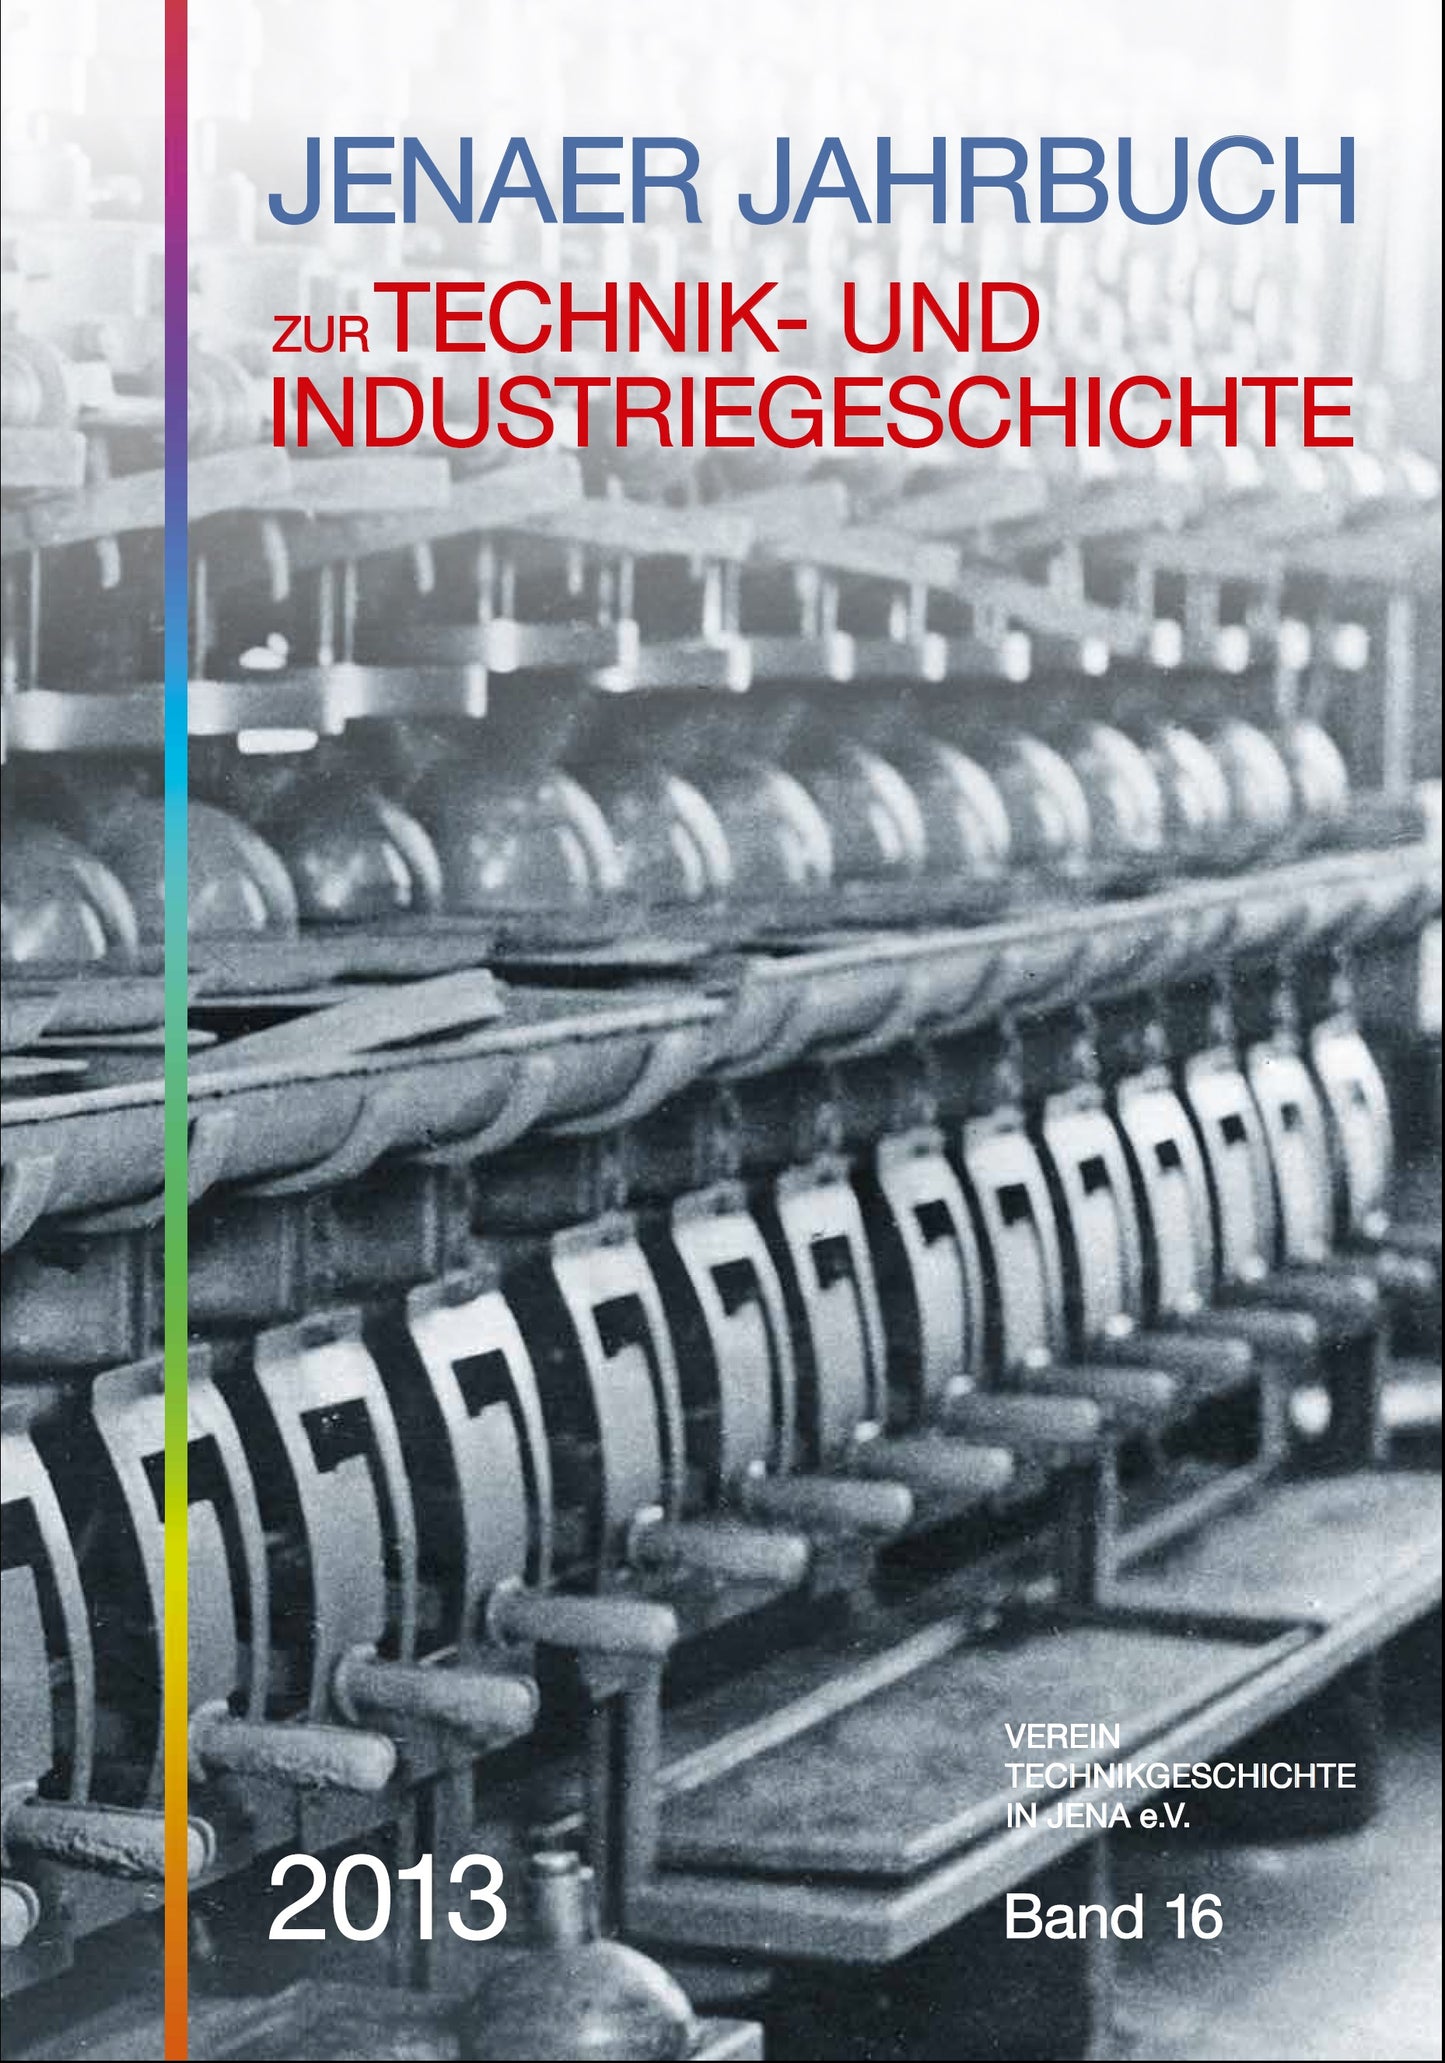 Jenaer Jahrbuch zur Technik- und Industriegeschichte 2013  - Band 16